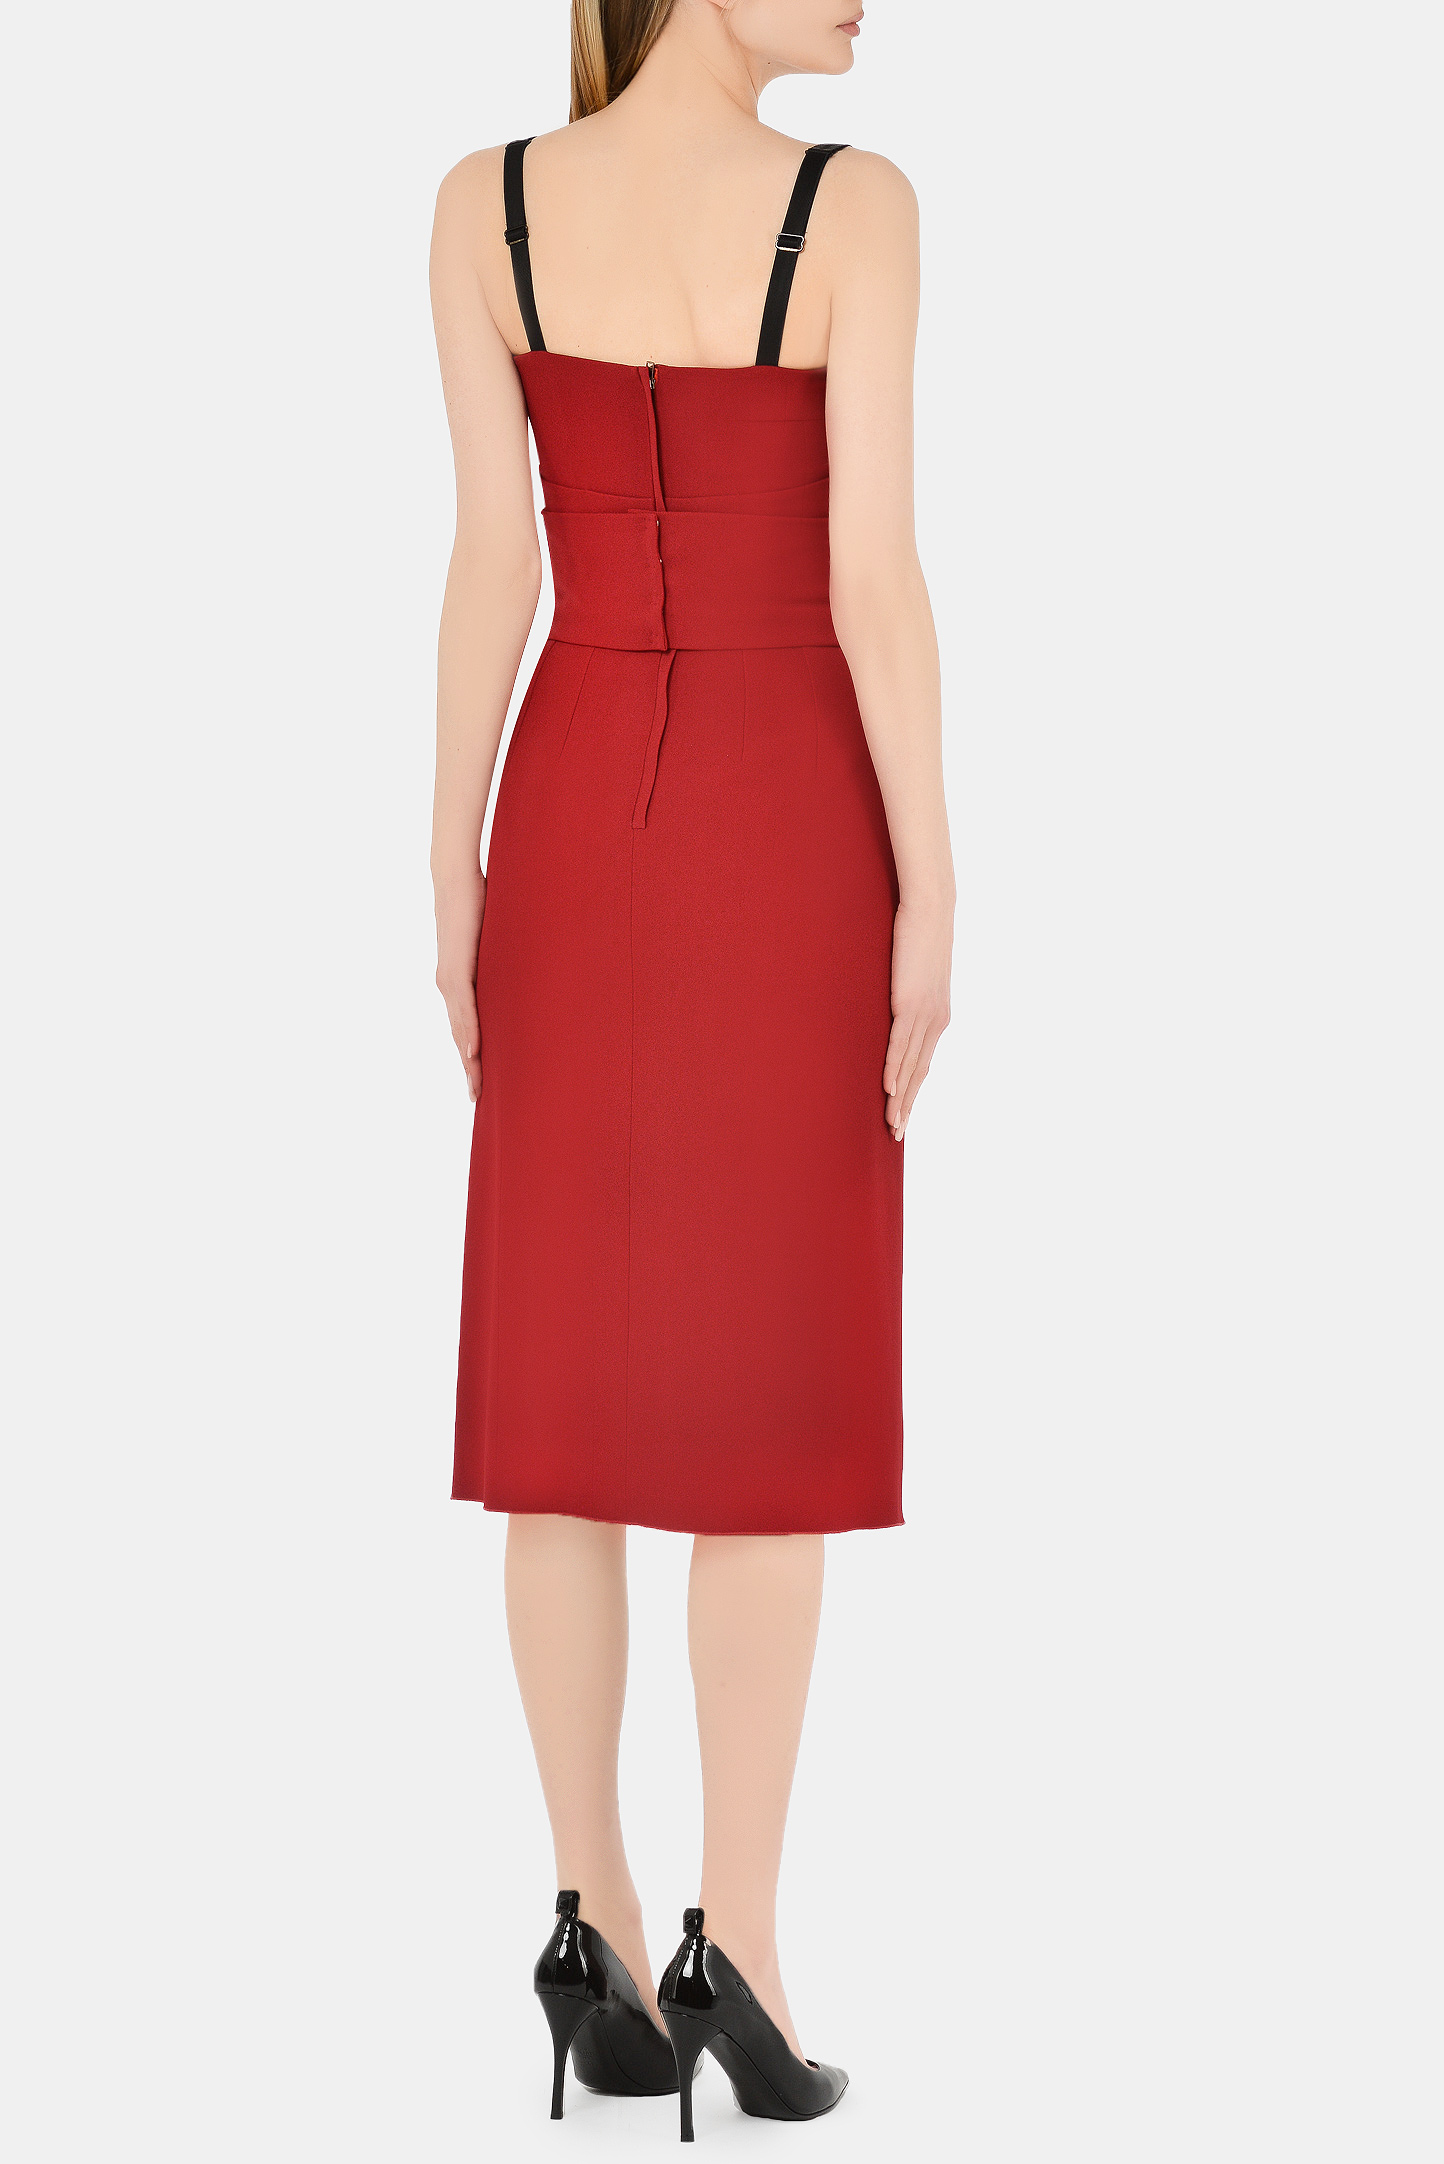 Платье DOLCE & GABBANA F6P0IT FURDV, цвет: Бордовый, Женский